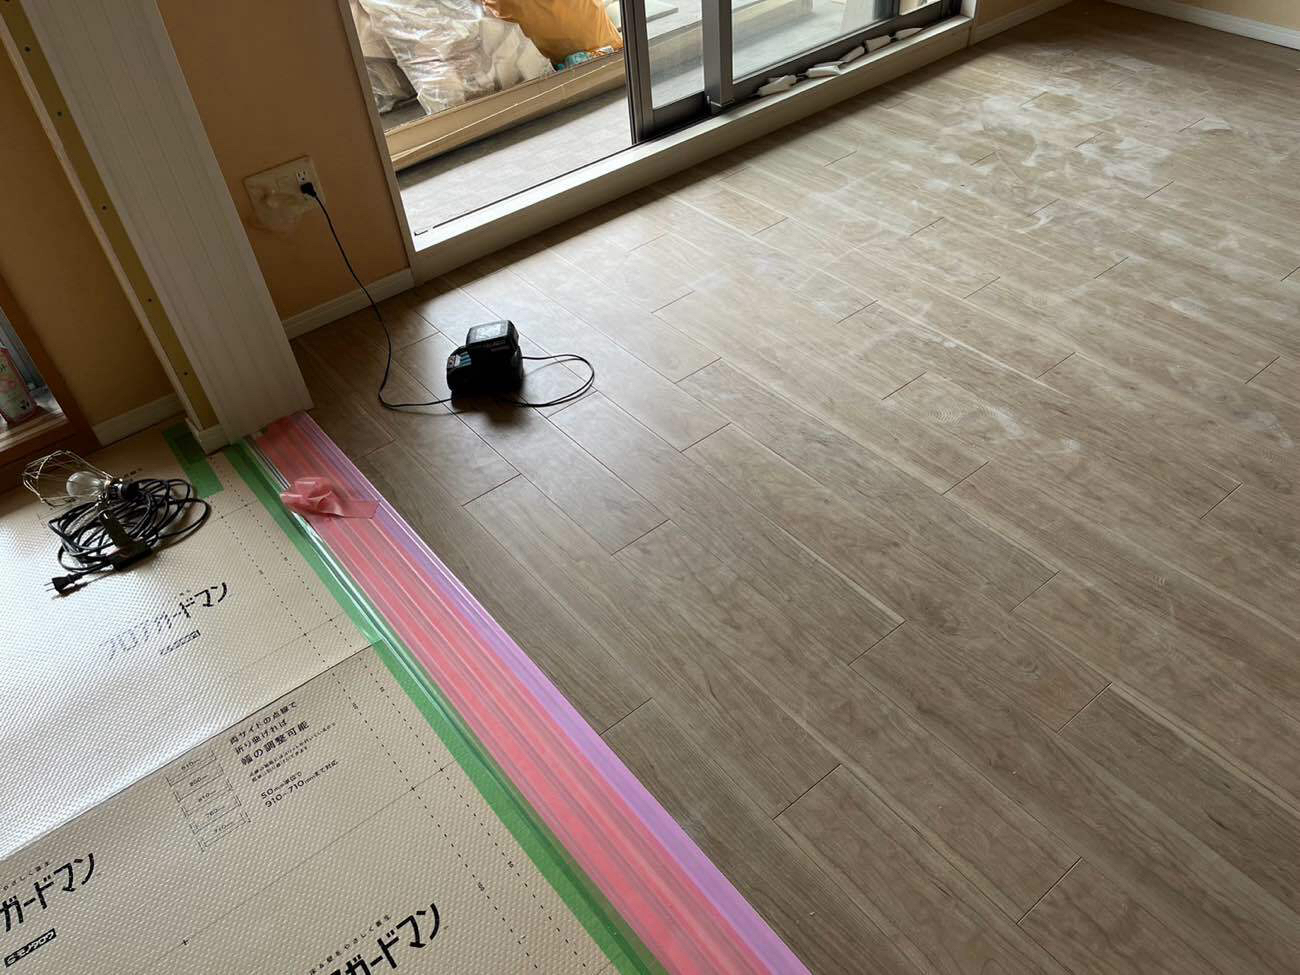 東京都三鷹市のマンションにて、防音フロア工事を行いました。【秀和建工】